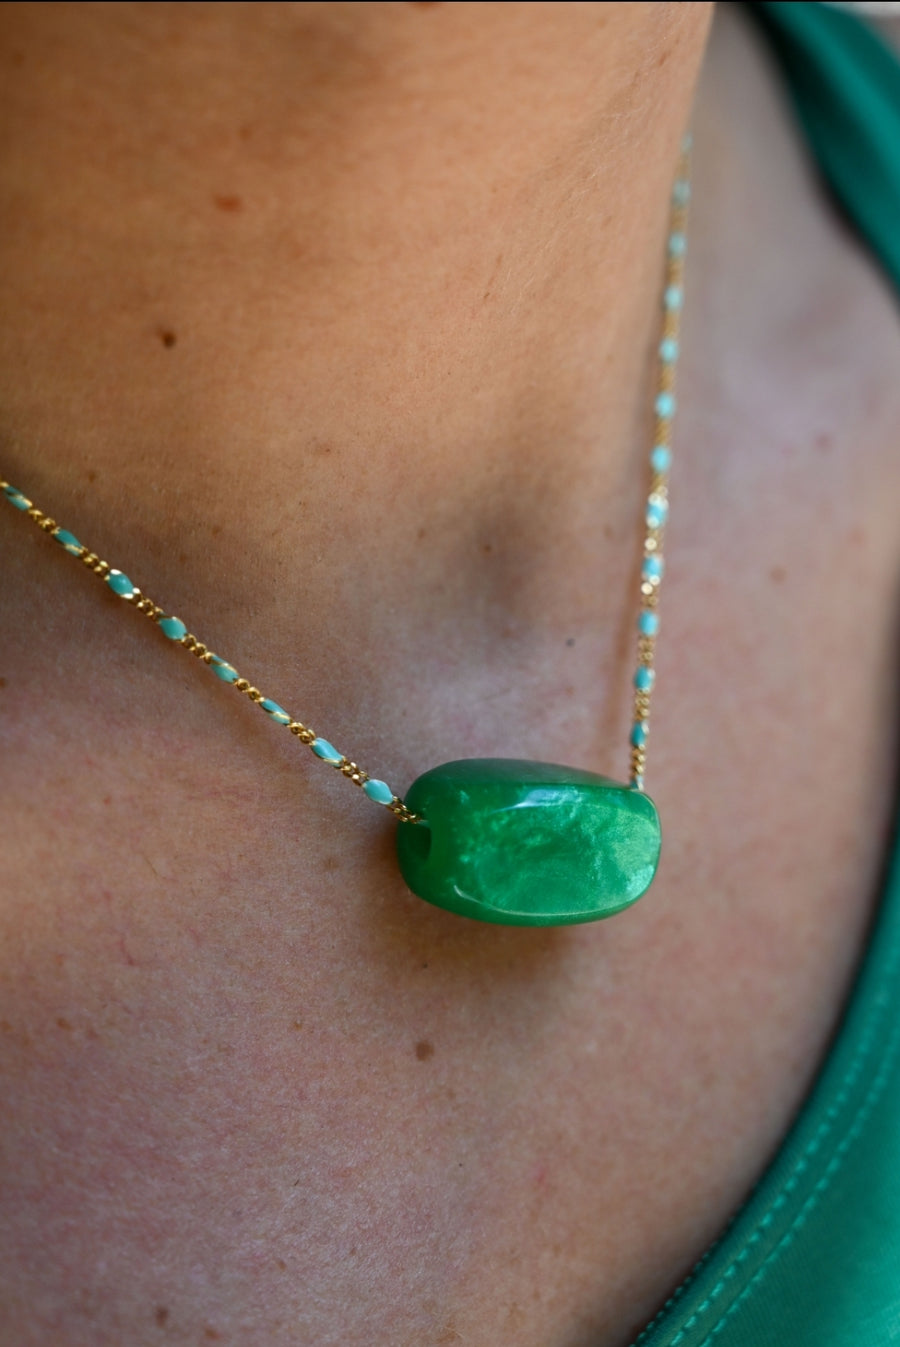 Green harmony stone necklace